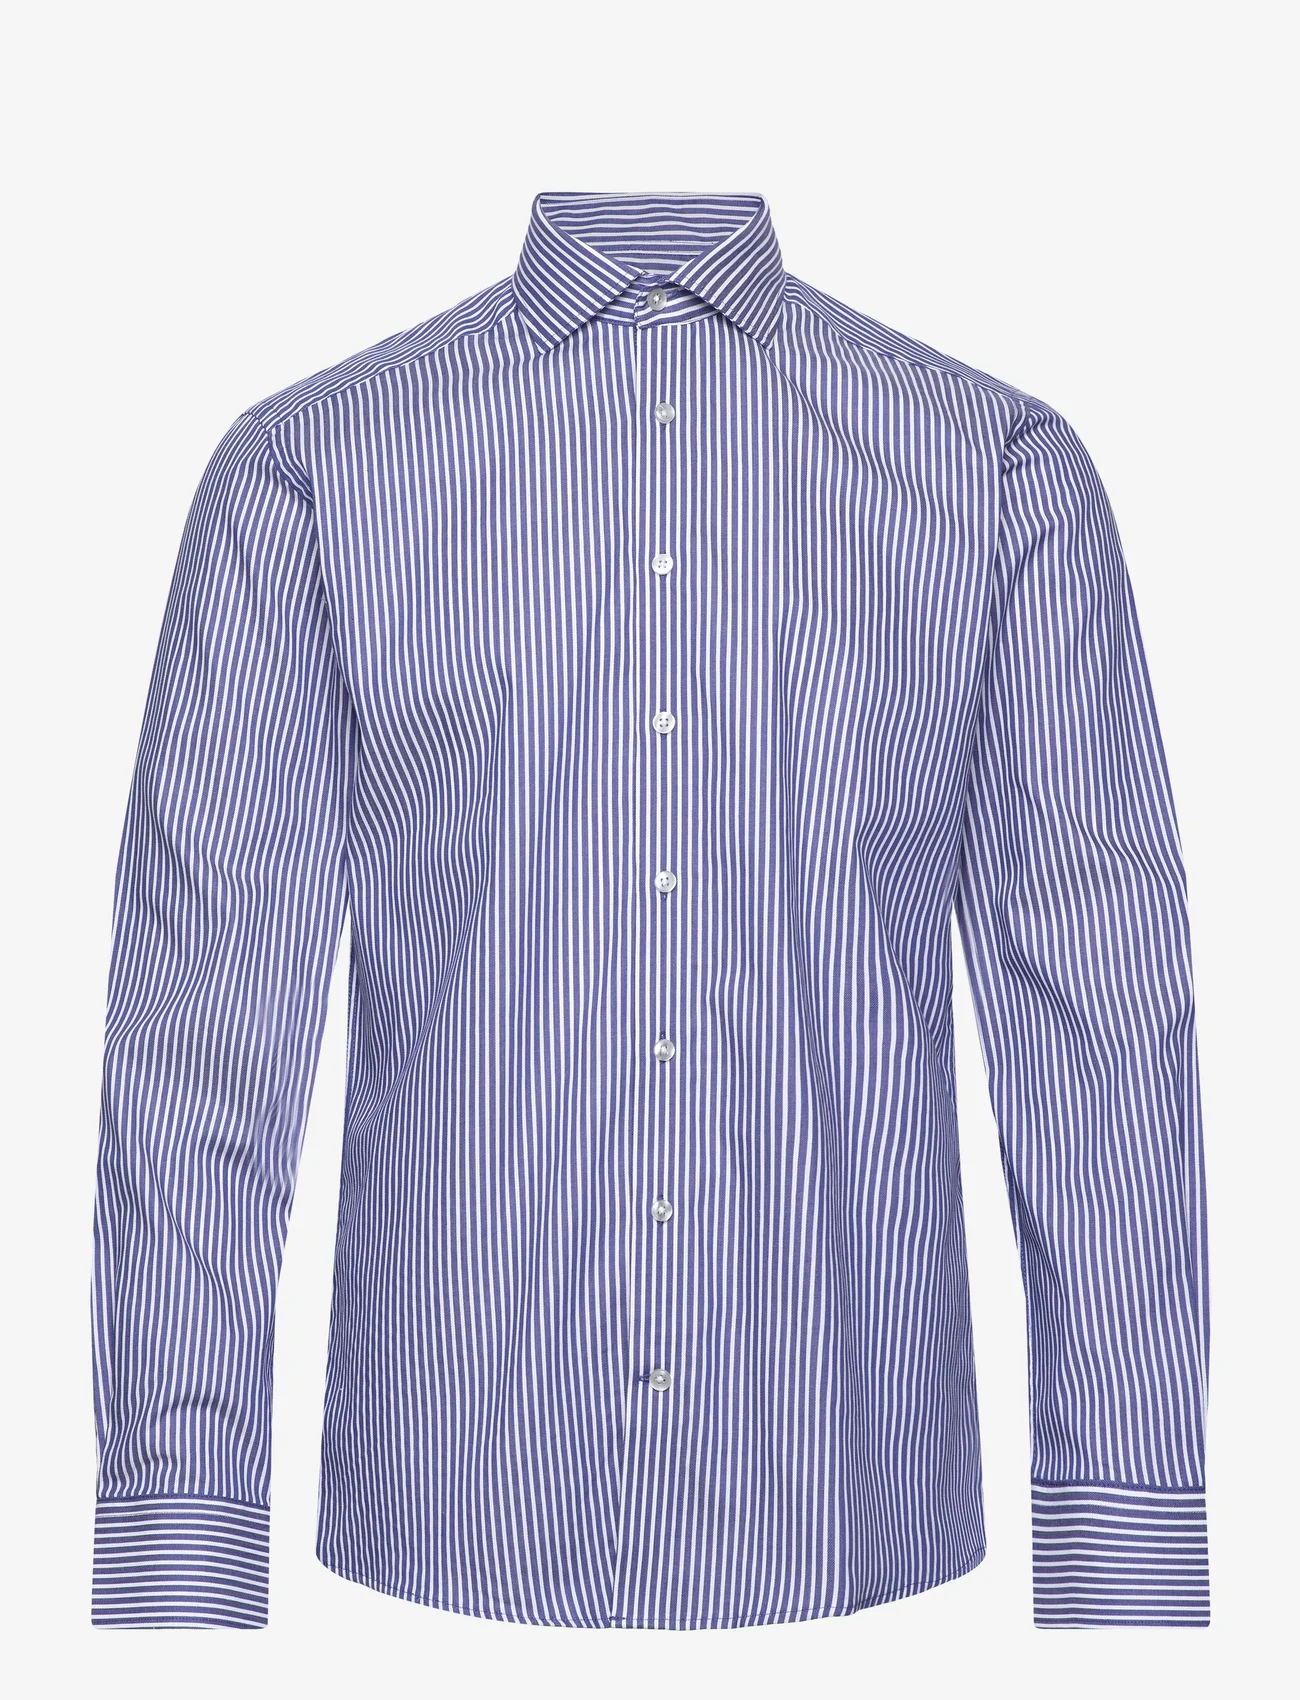 Bruun & Stengade - BS Bradshaw Slim Fit Shirt - business skjorter - dark blue/white - 0